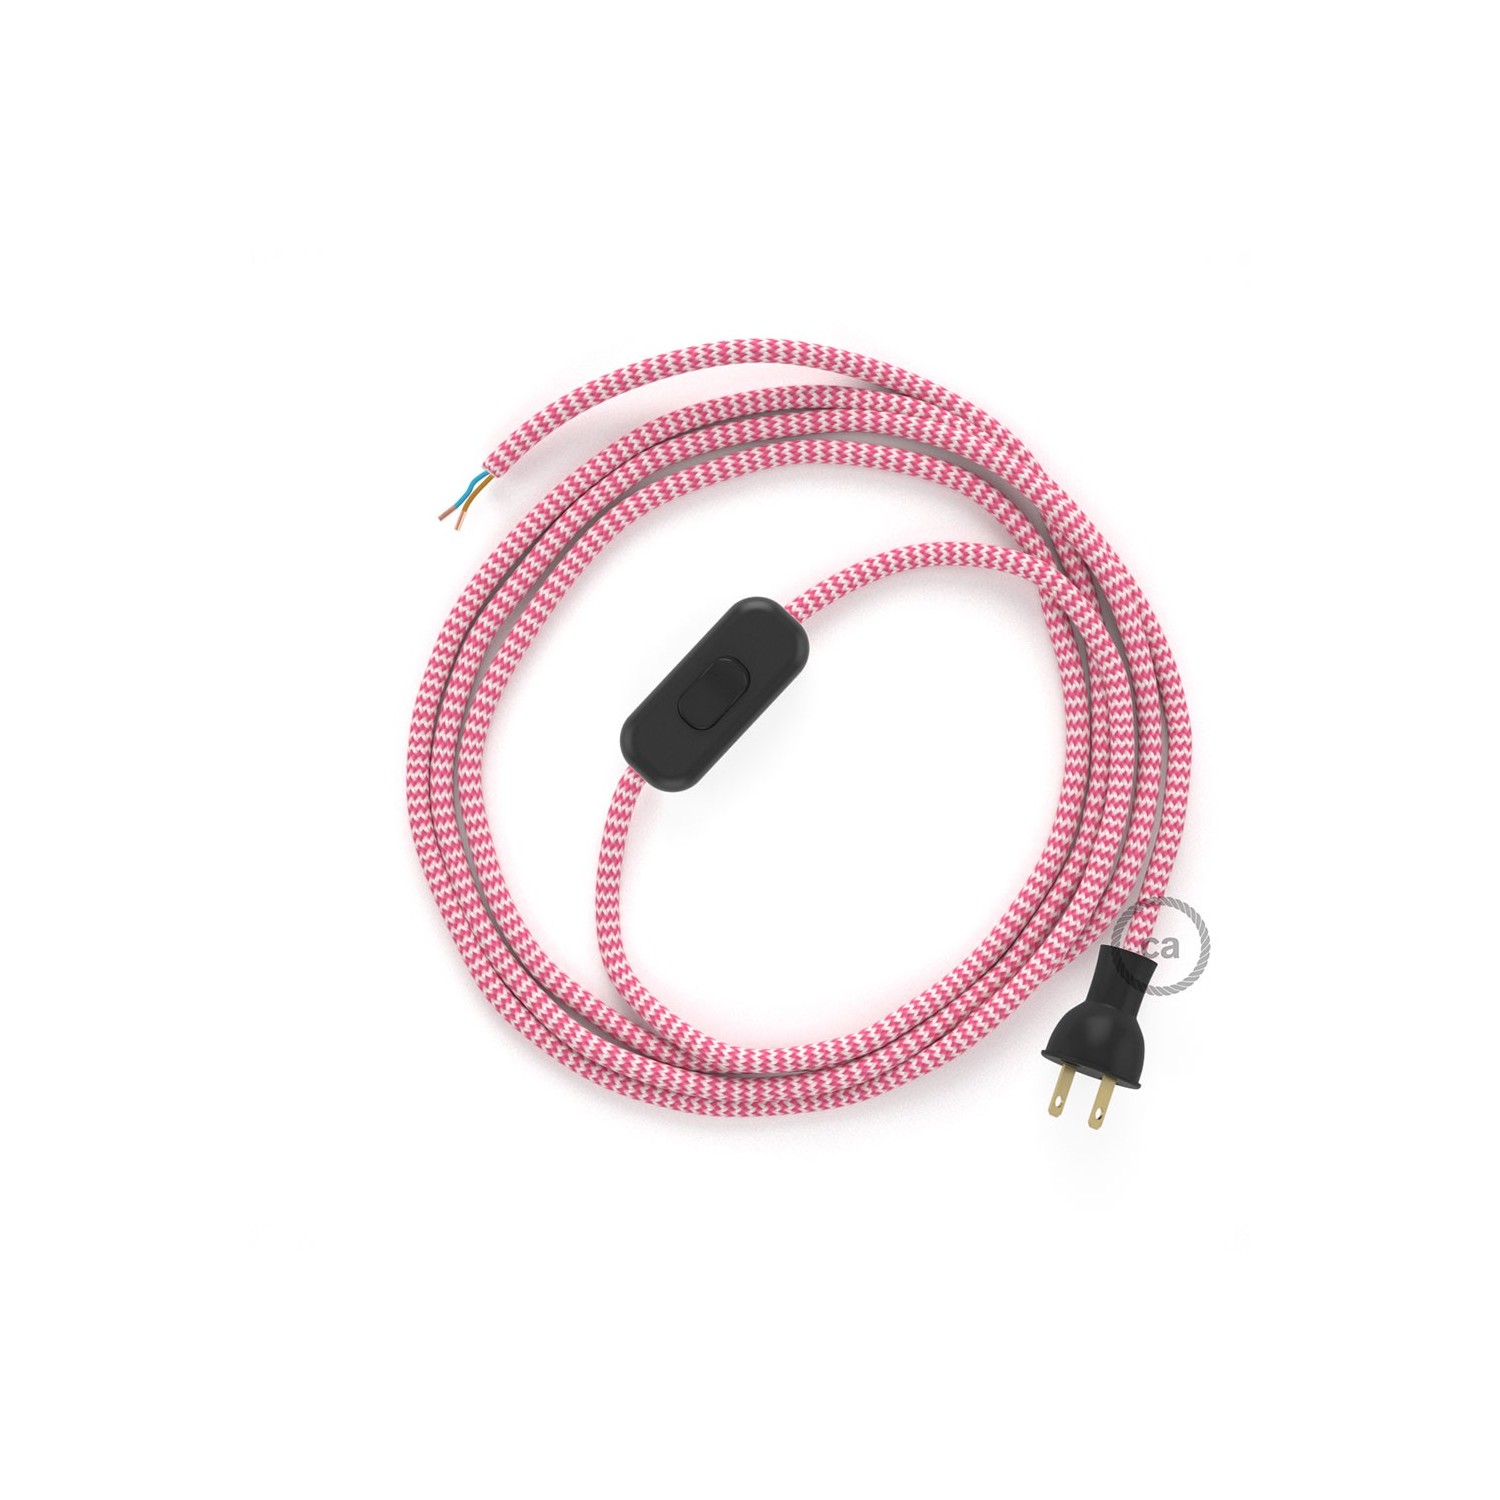 Cableado para lámpara de mesa, cable RZ08 Rayón ZigZag Blanco Fucsia 1,8 m. Elige el color de la clavija y del interruptor!